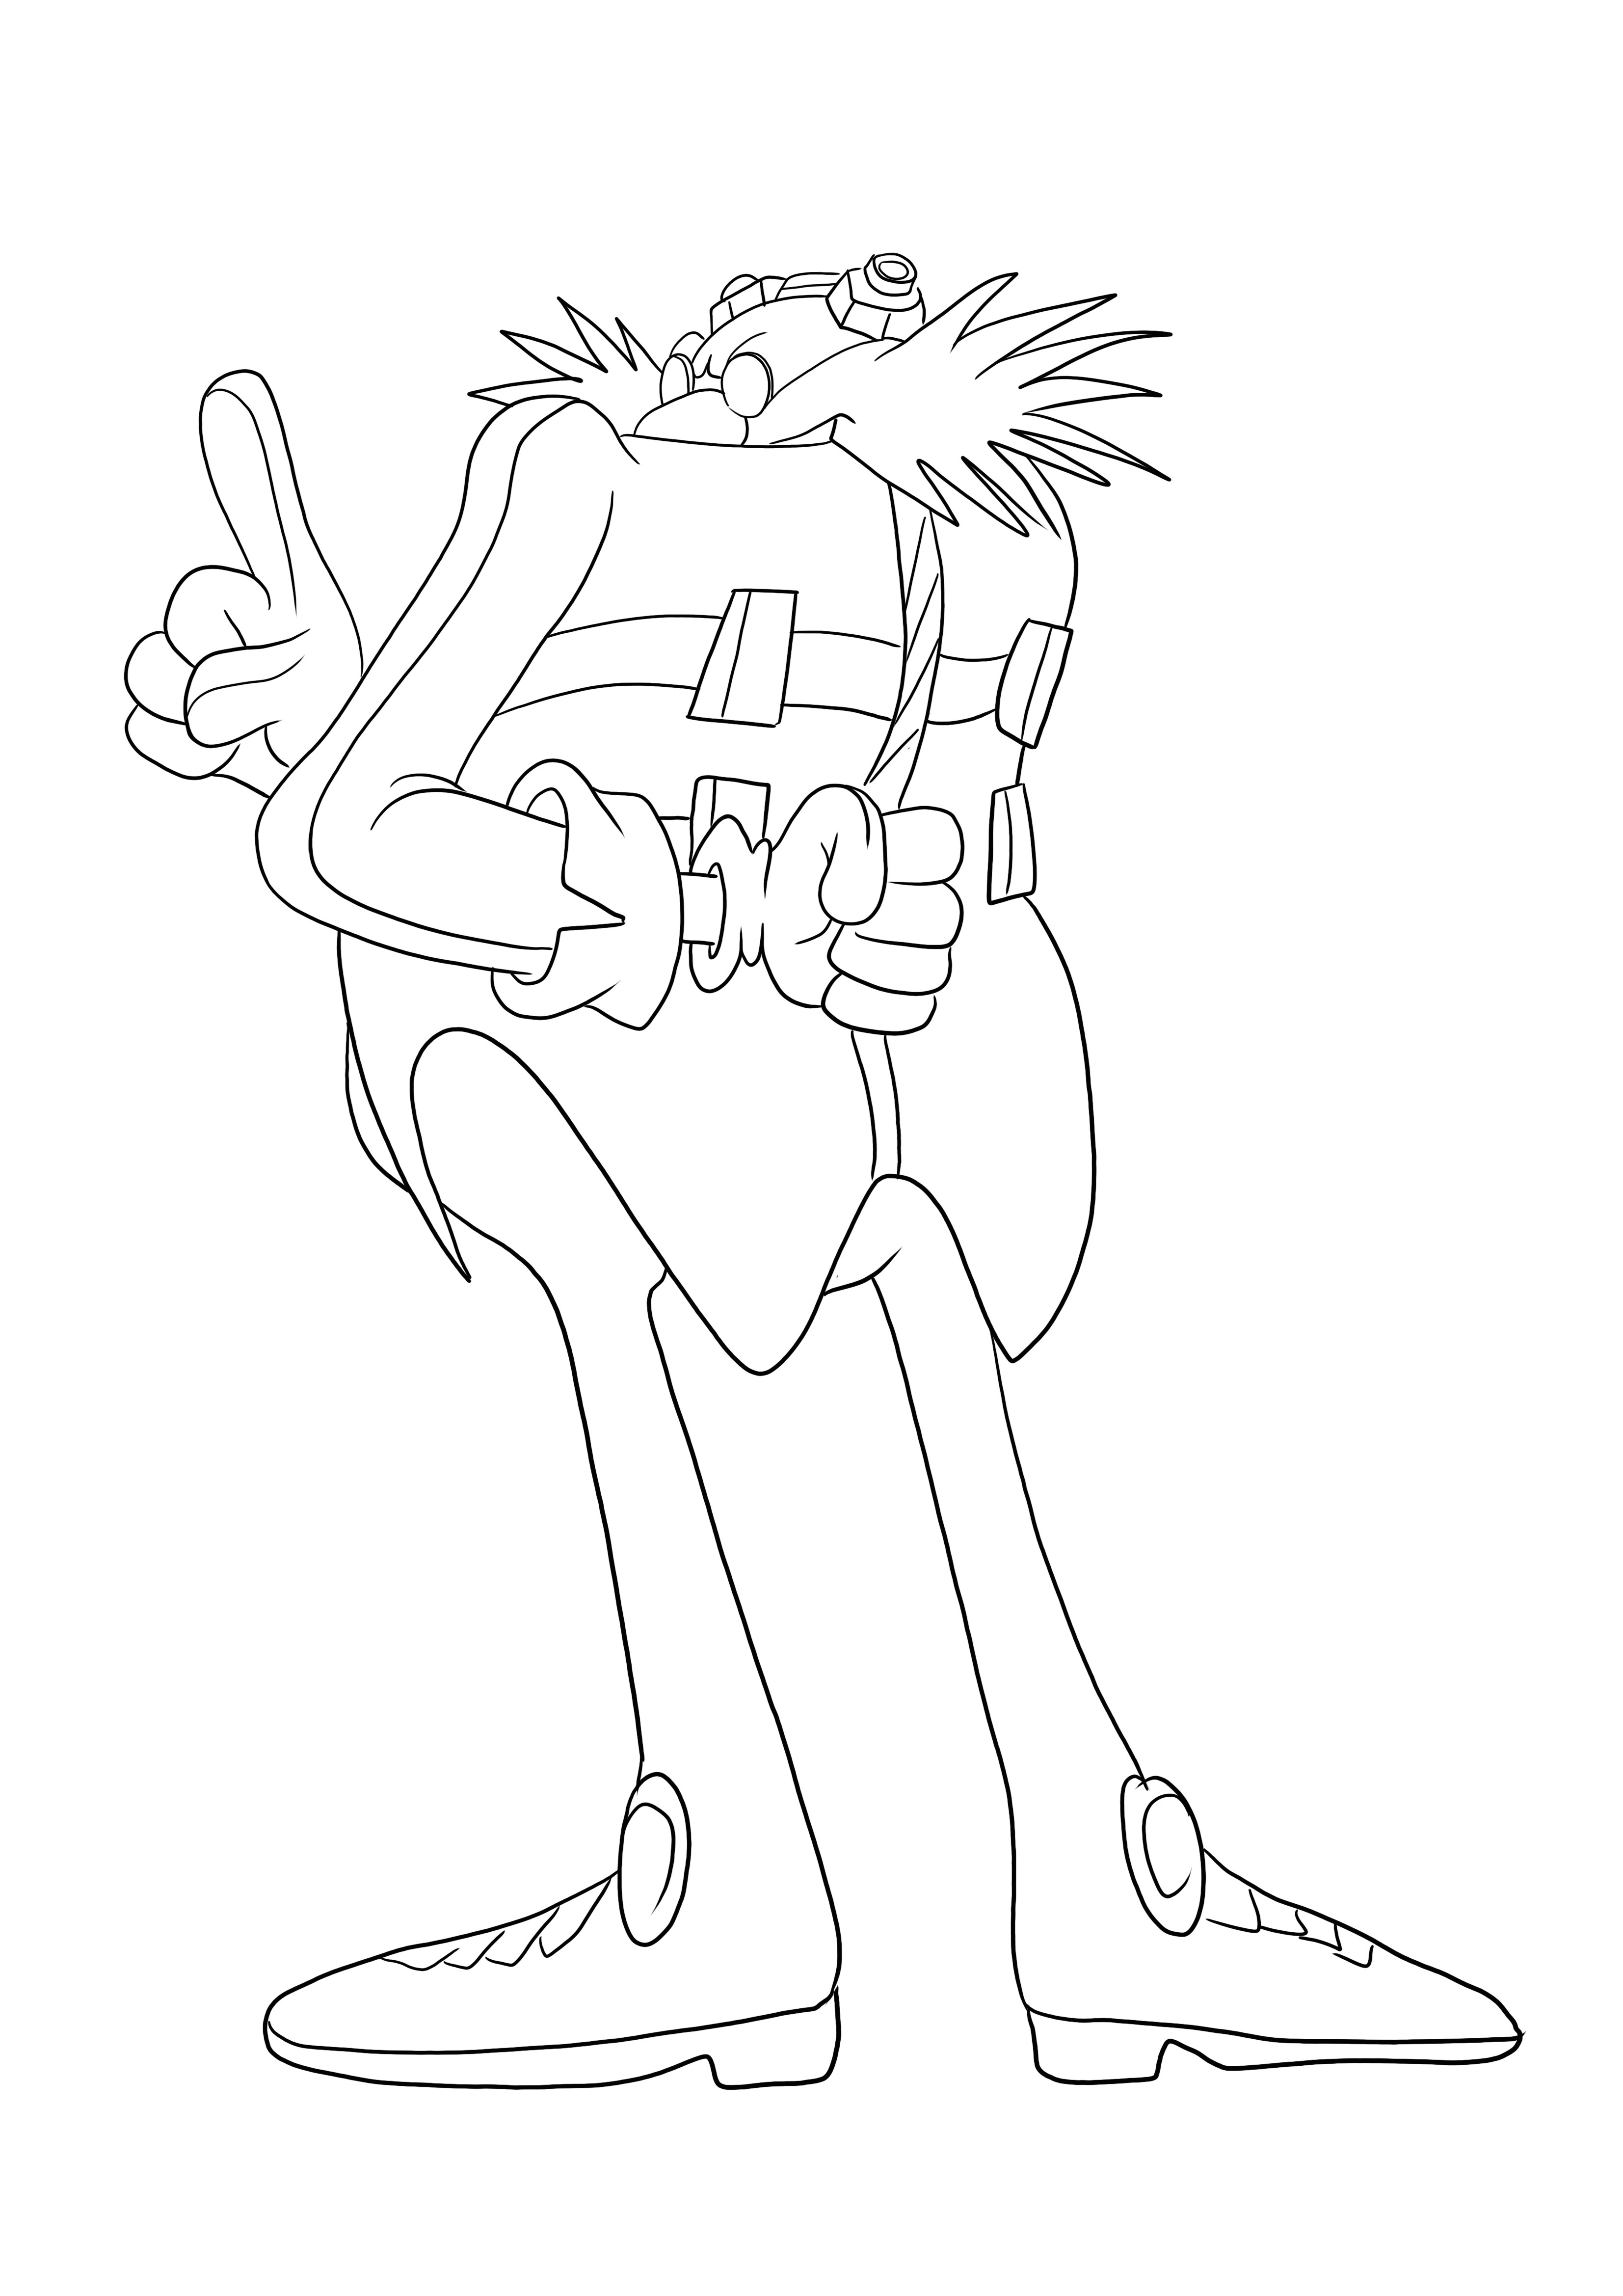 Inilah Dr Eggman dari seri Sonic yang bebas untuk dicetak dan mudah diwarnai